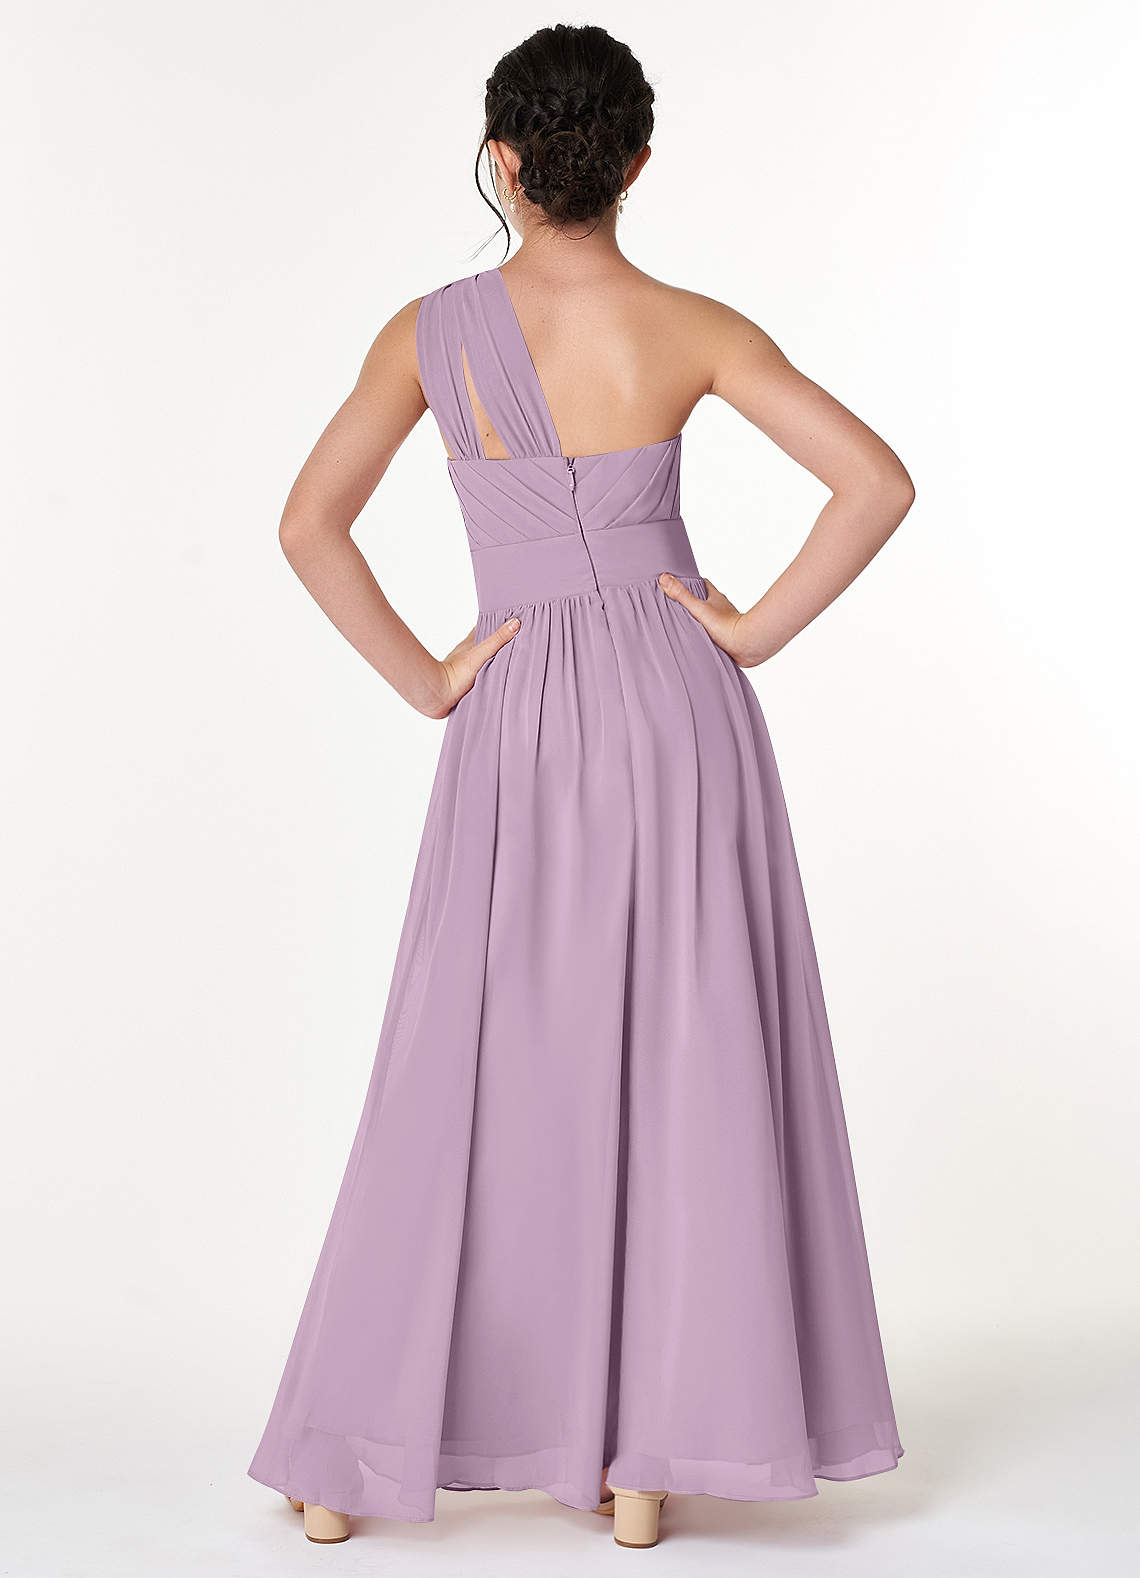 Azazie Molly A-Line Pleated Chiffon Floor-Length Junior Bridesmaid Dress image1